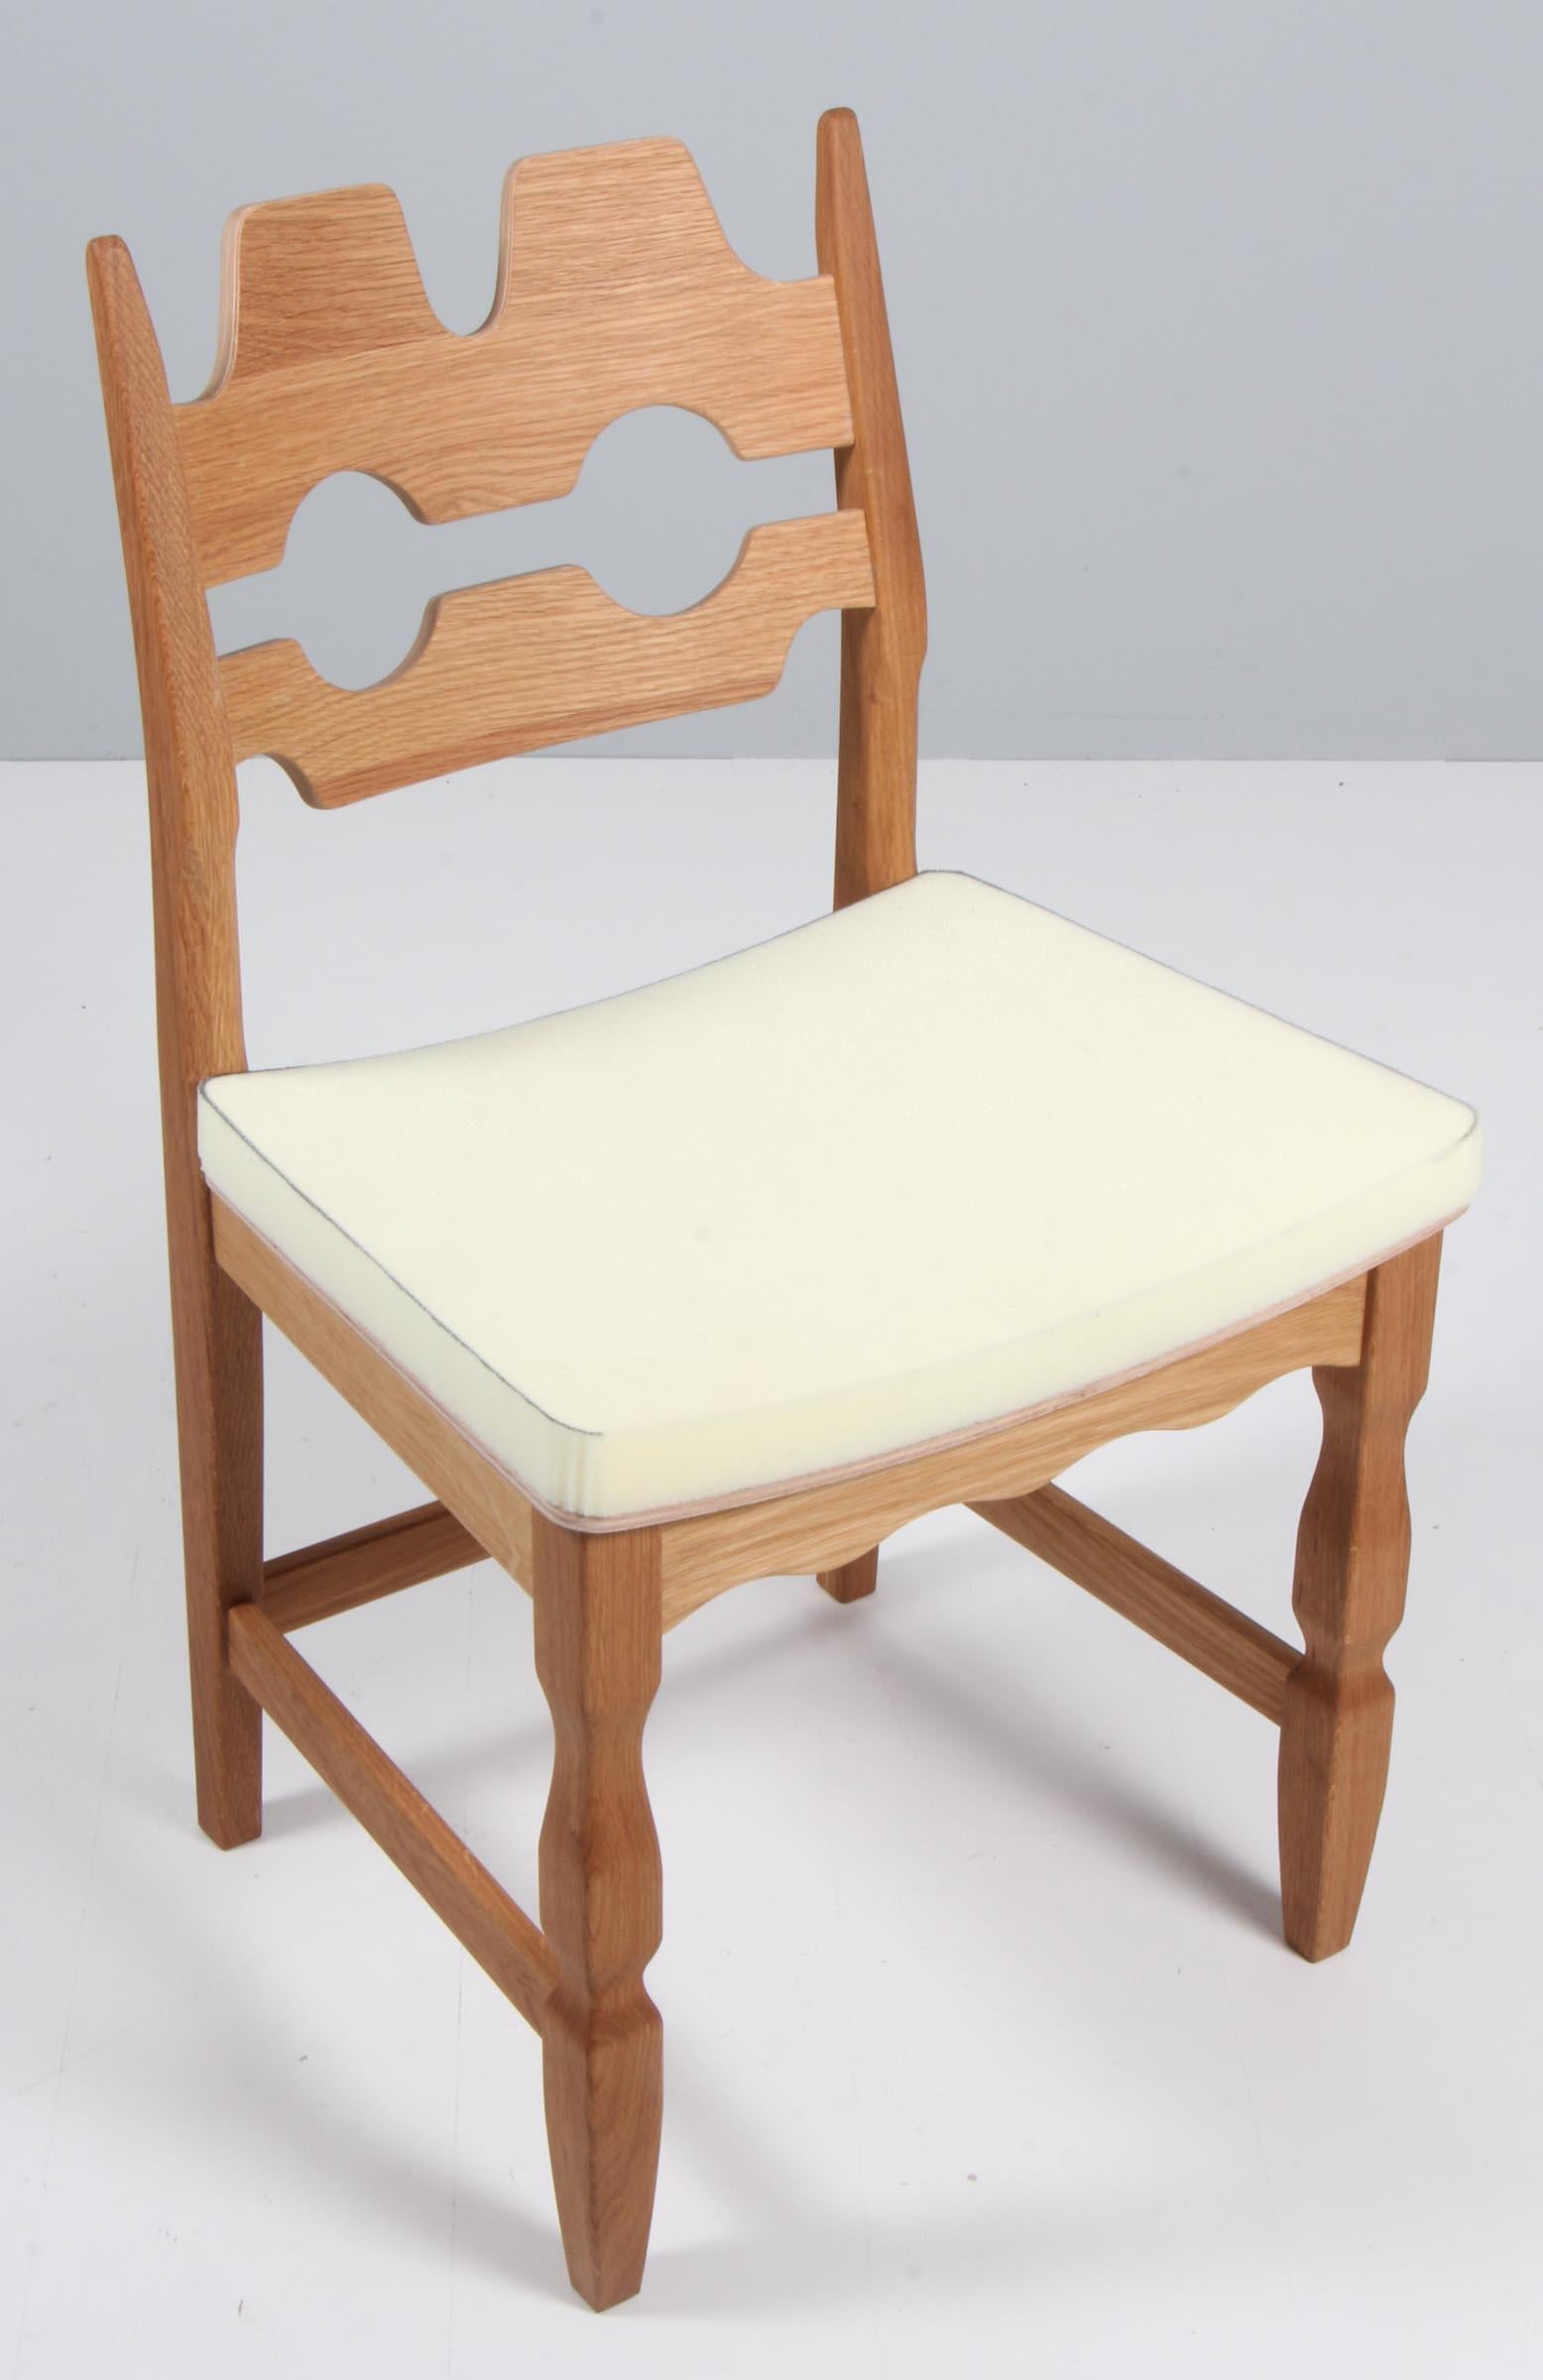 Ensemble de chaises de salle à manger de Henning Kjærnulf, en chêne, prêtes à être rembourrées.

Un design rafraîchissant où le baroque audacieux se marie bien avec le modernisme du milieu du siècle.

Modèle : Lame de rasoir

Réalisé par Another